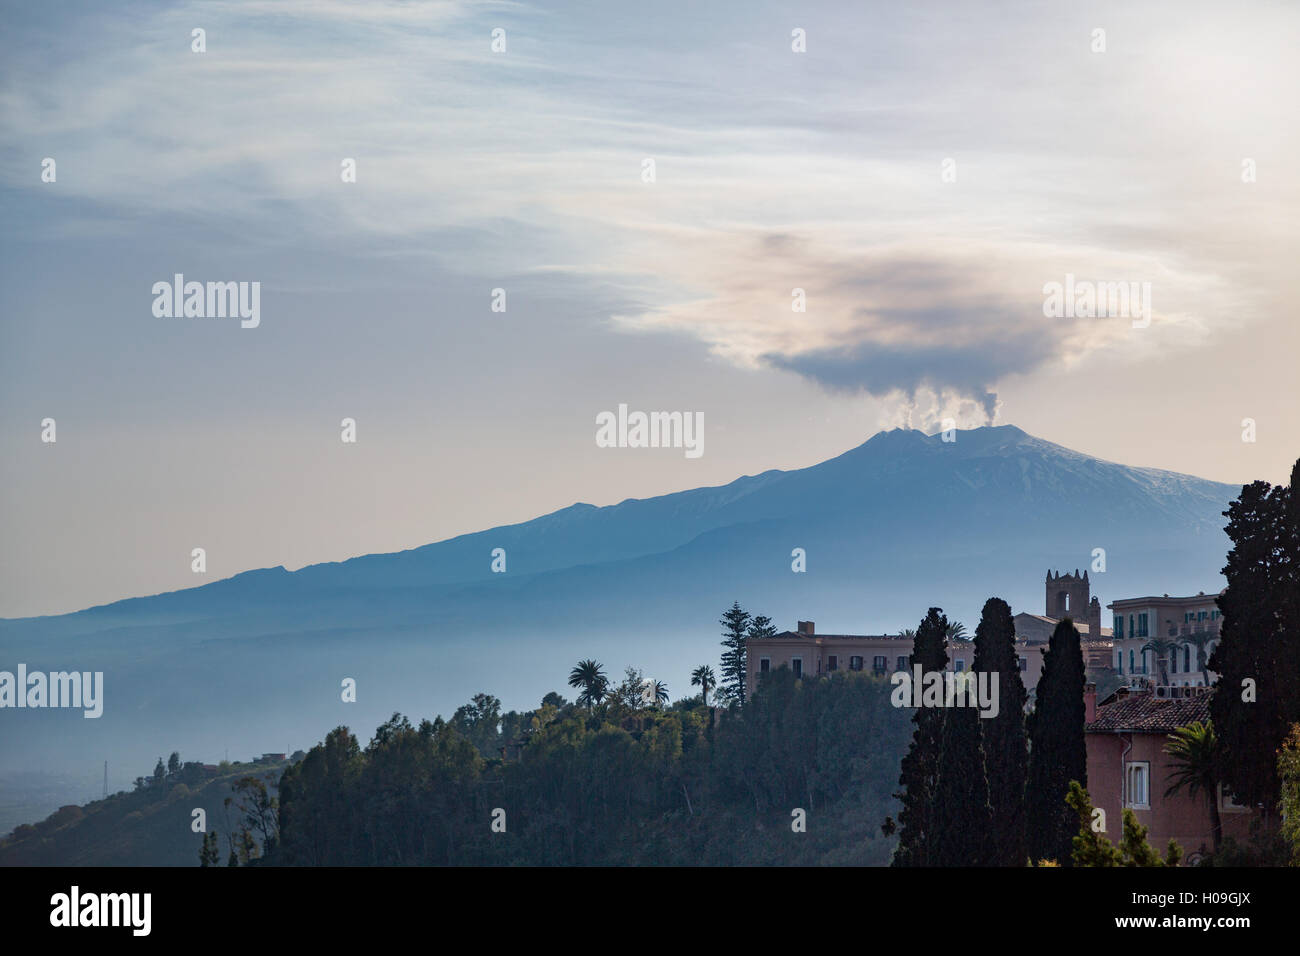 Die ehrfurchtgebietenden Ätna, UNESCO und höchste aktive Vulkan Europas, gesehen von Taormina, Sizilien, Italien, mediterran Stockfoto